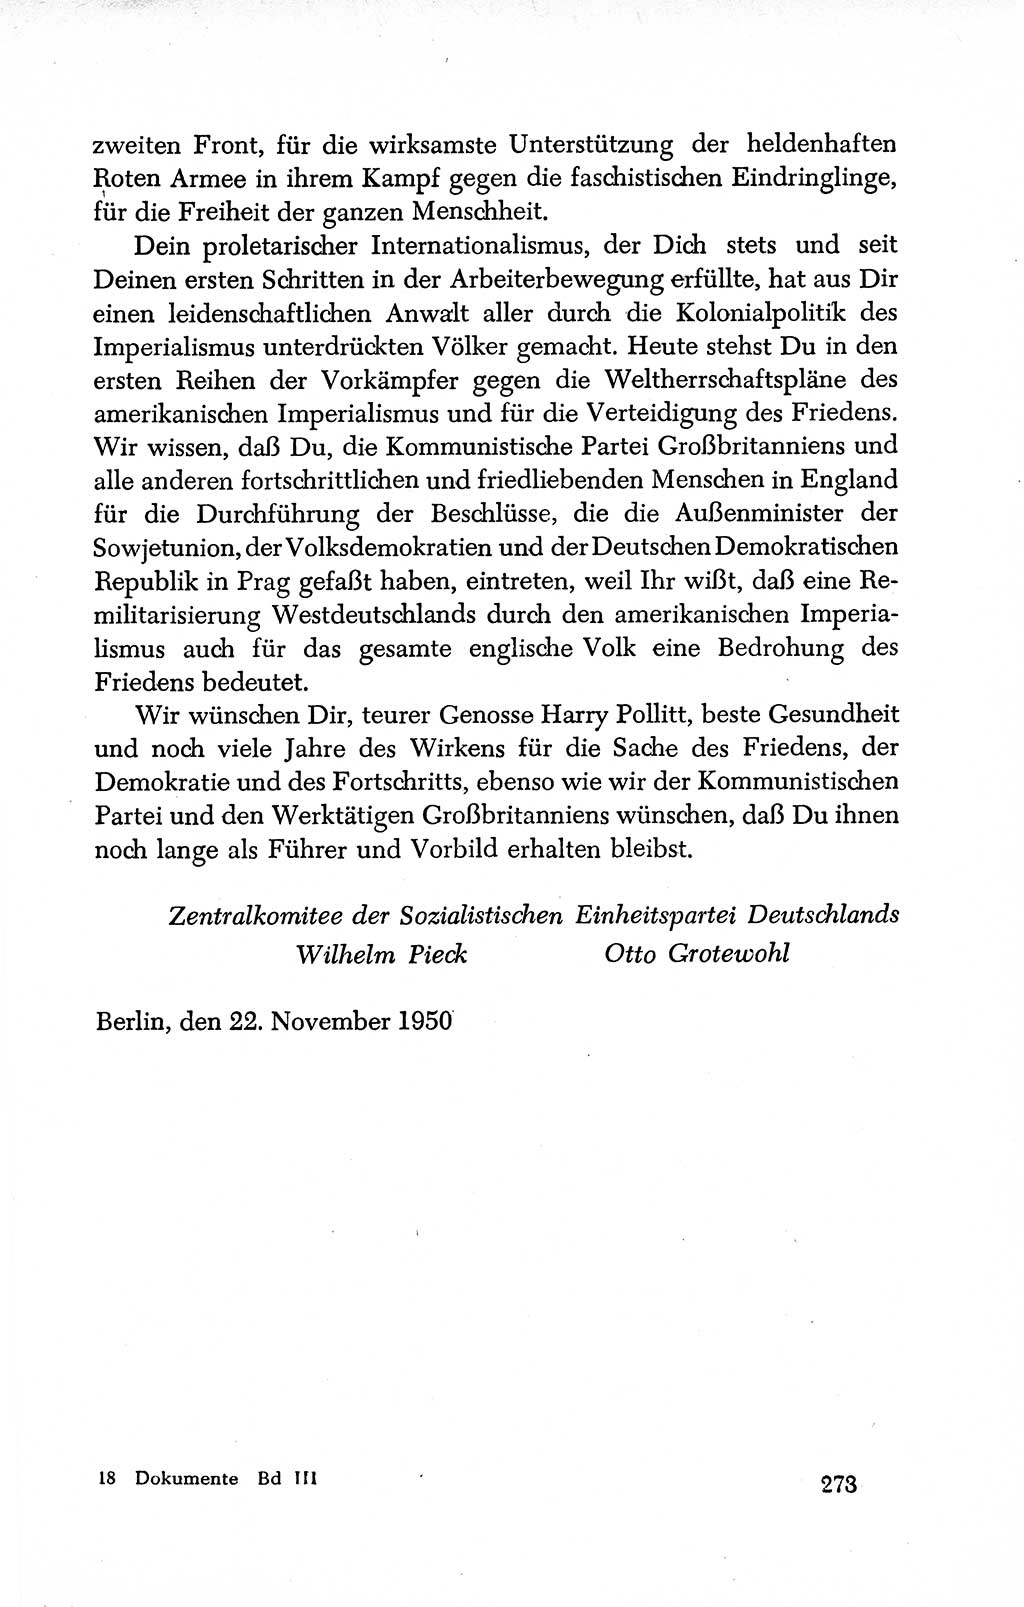 Dokumente der Sozialistischen Einheitspartei Deutschlands (SED) [Deutsche Demokratische Republik (DDR)] 1950-1952, Seite 273 (Dok. SED DDR 1950-1952, S. 273)